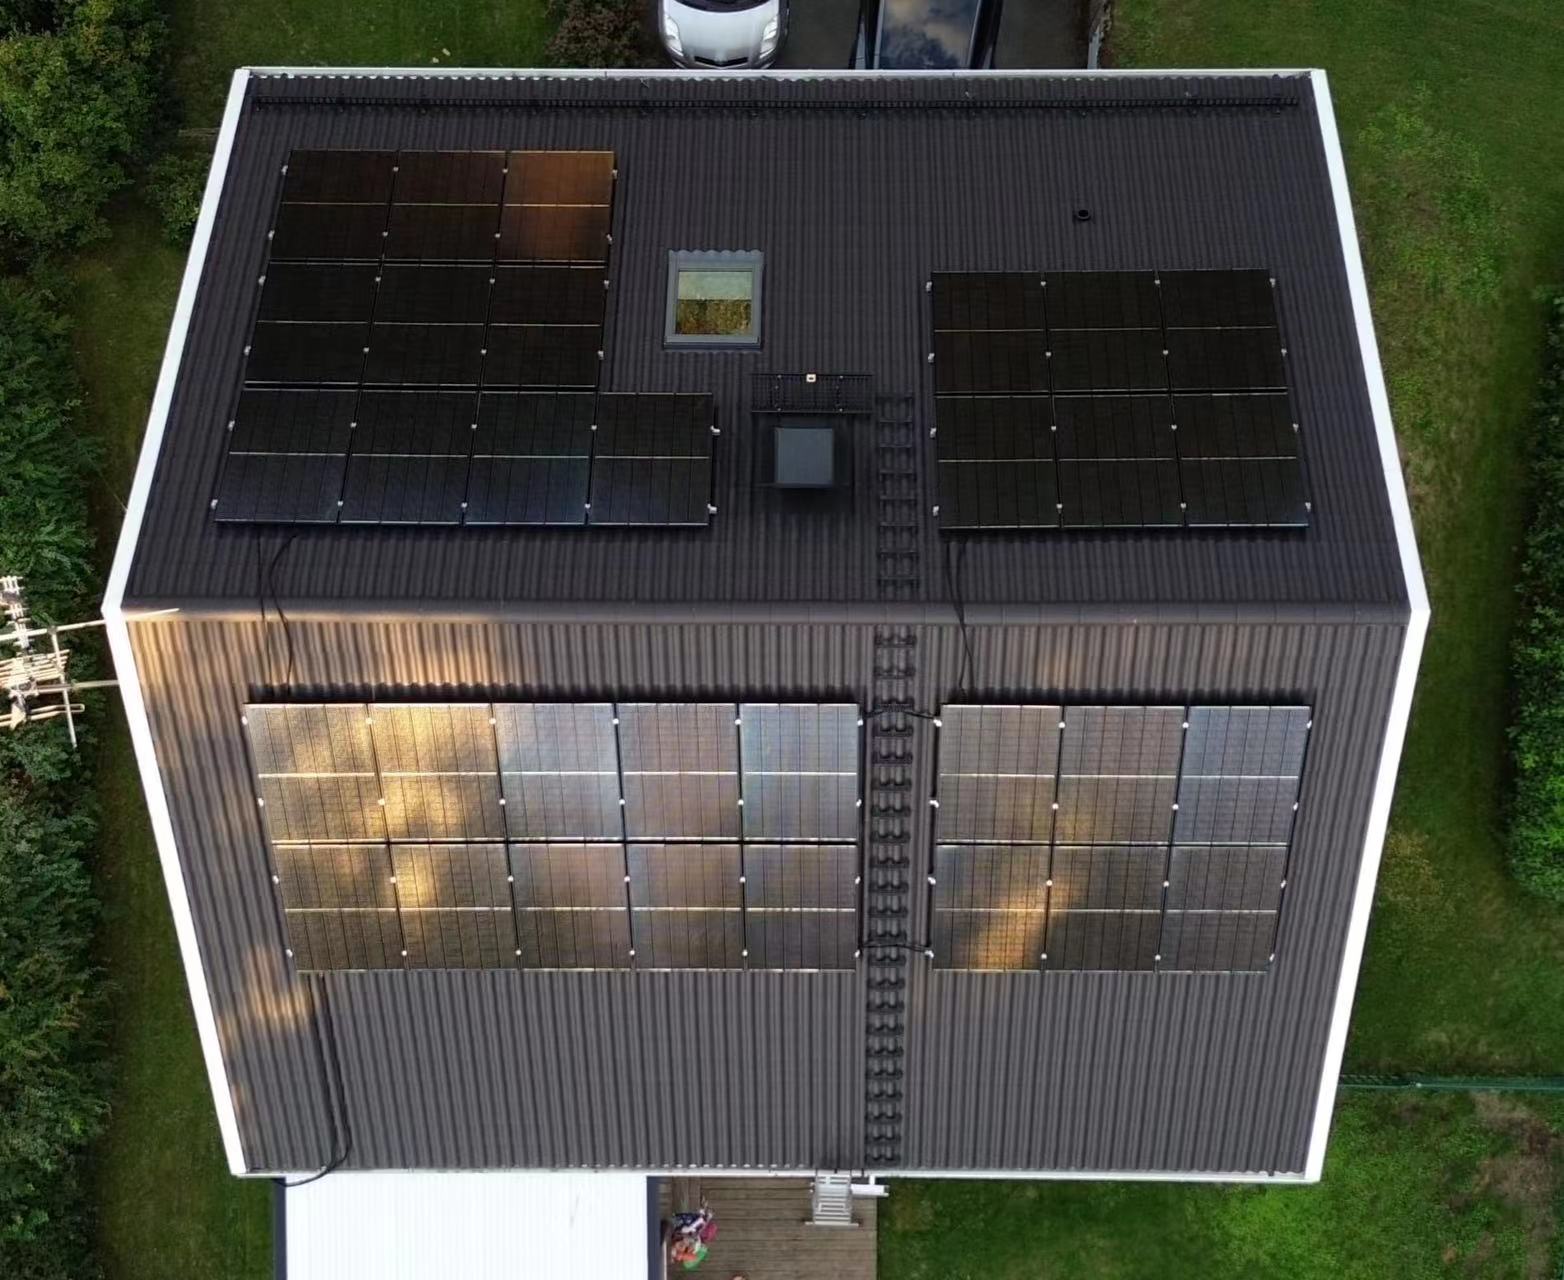 Preço de armazém no exterior 430W Topcon Mono painéis fotovoltaicos de meia célula 420W 415W para sistema solar doméstico